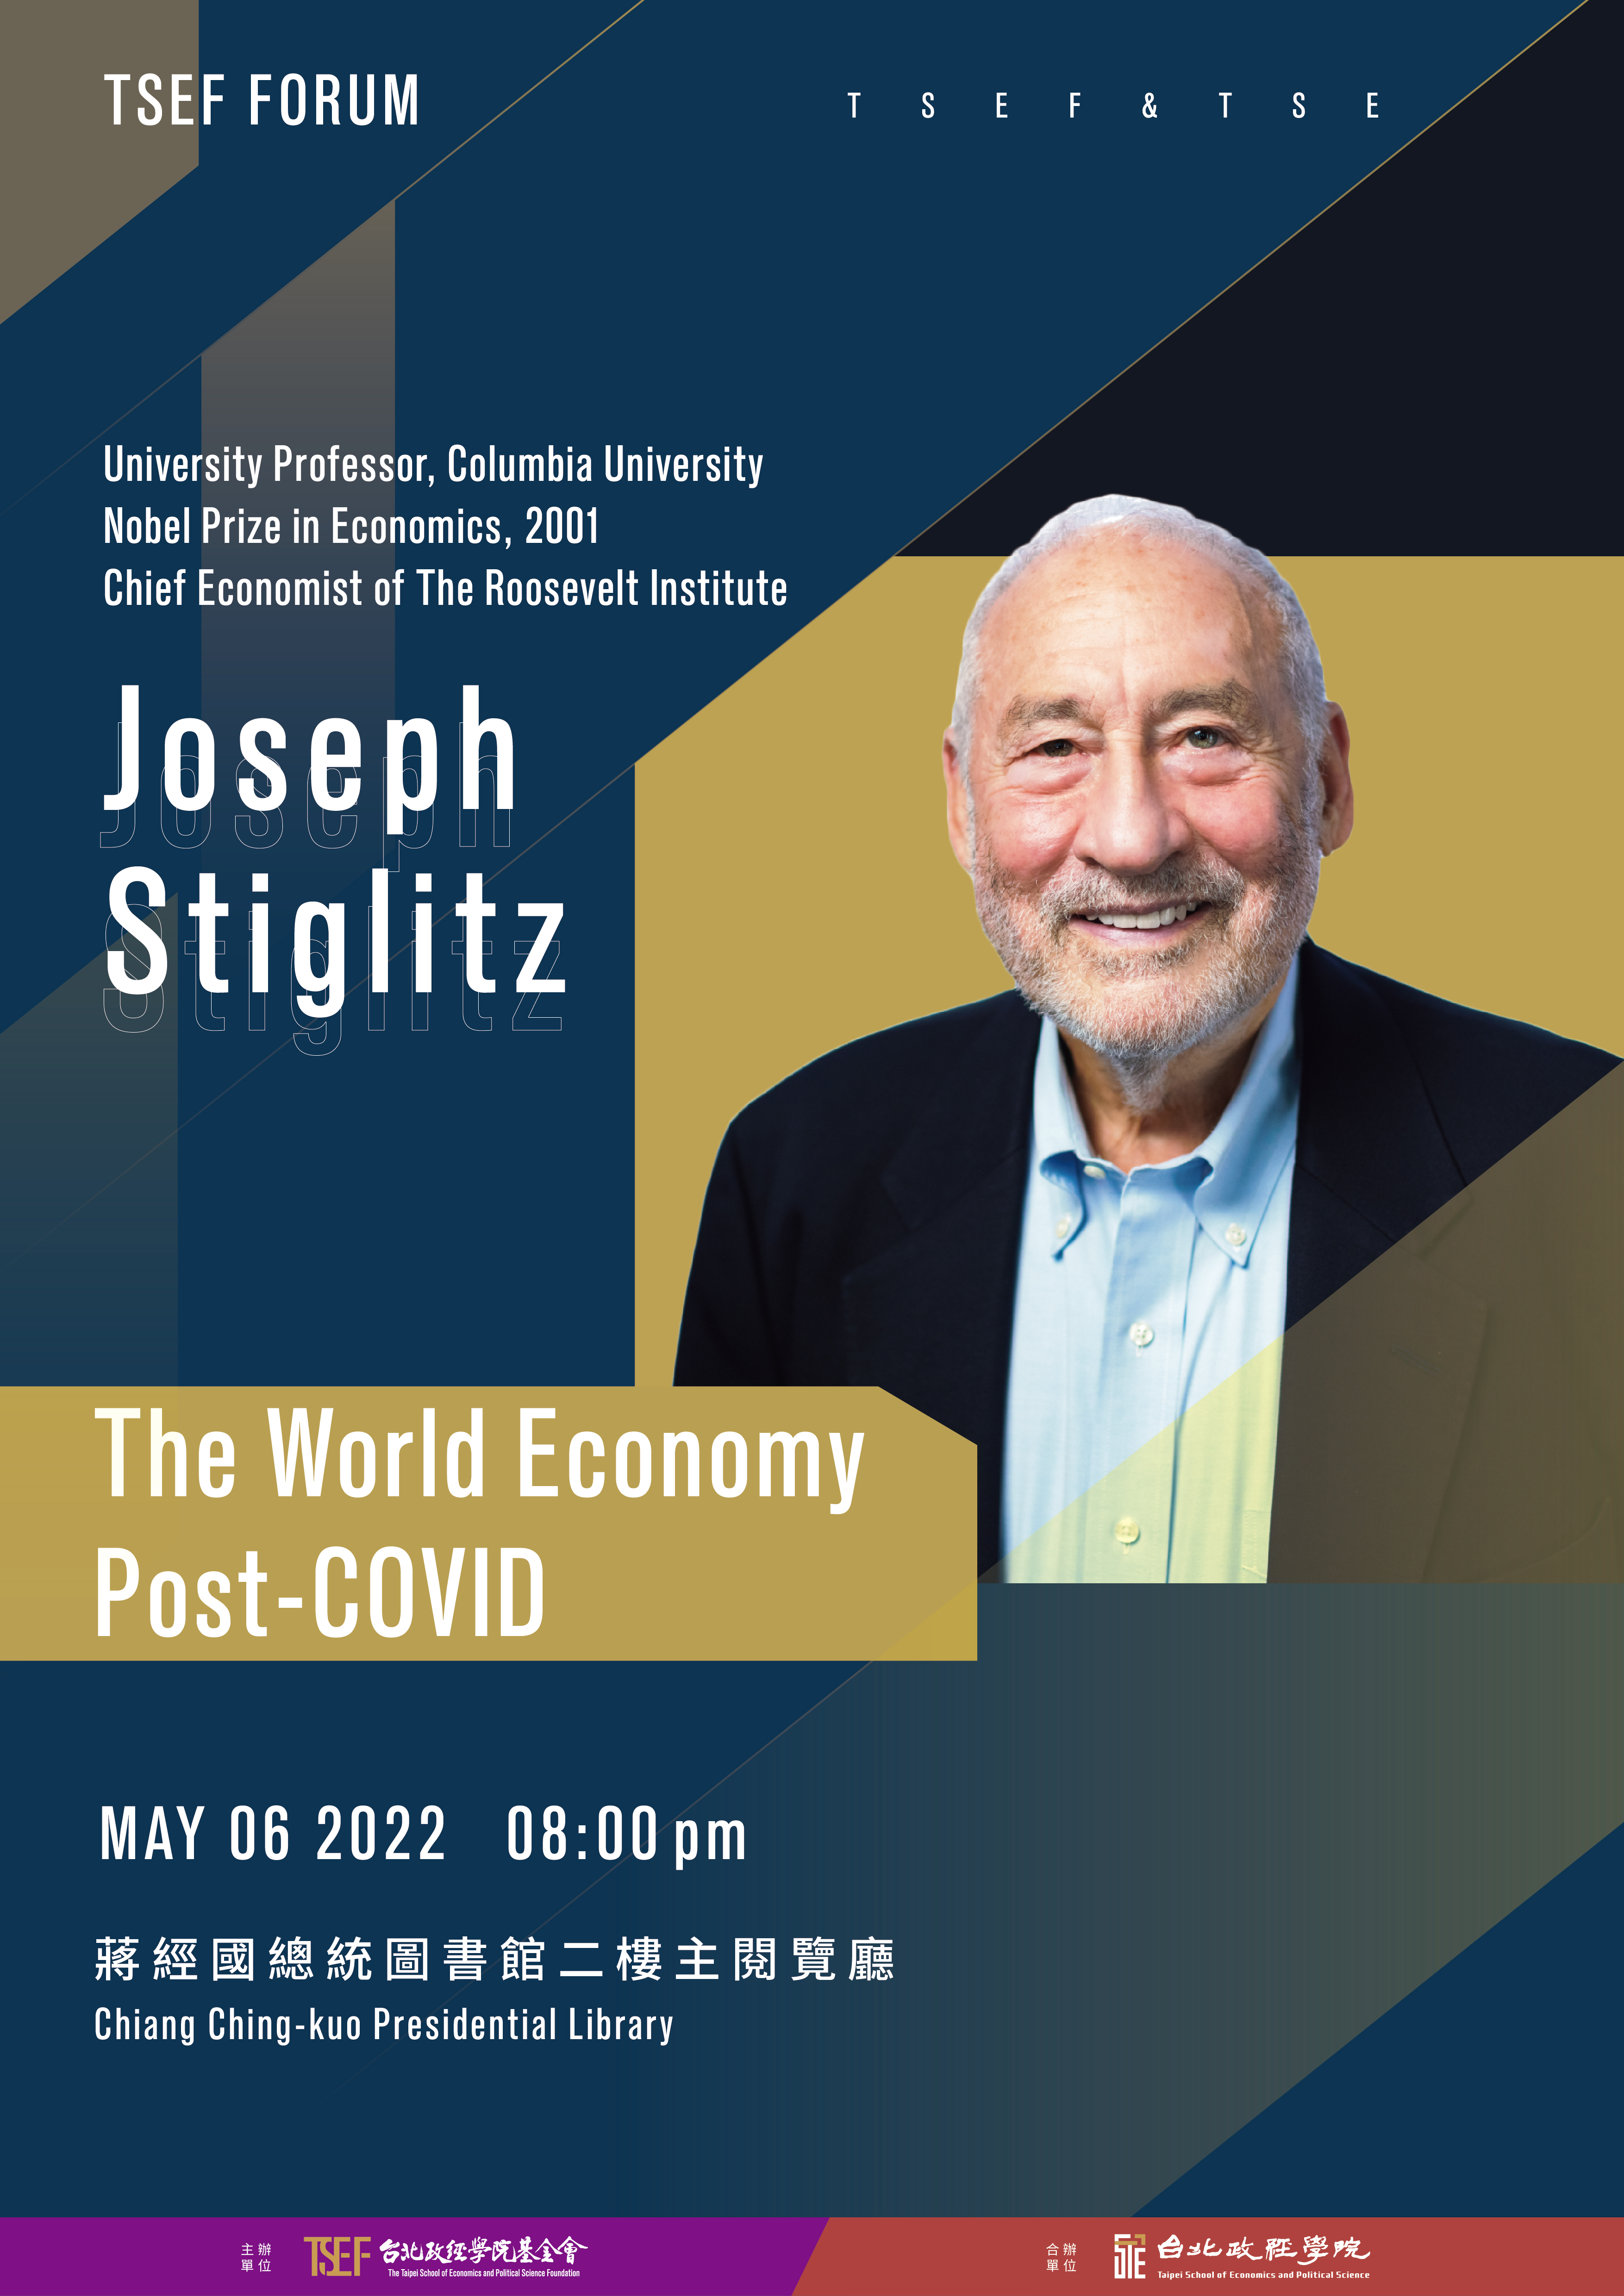 Forum | The World Economy Post-COVID with Nobel Prize Recipient Joseph Stiglitz